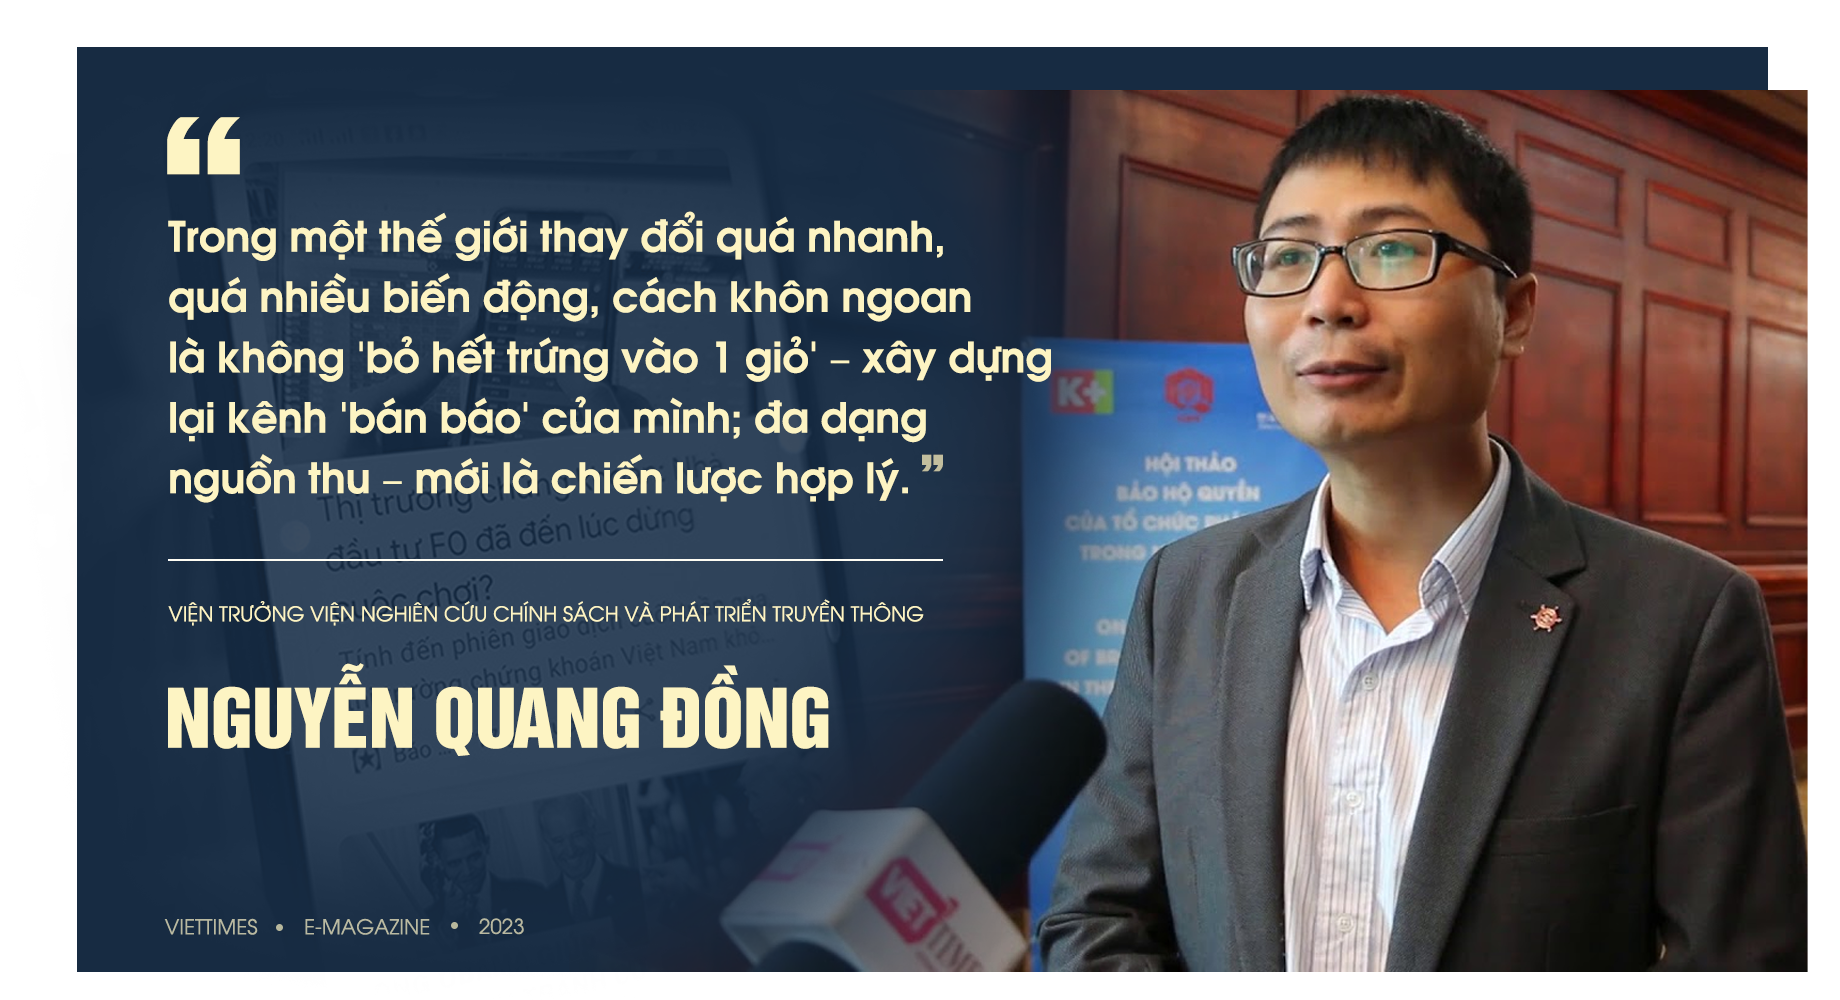 Mr Đồng 1.png